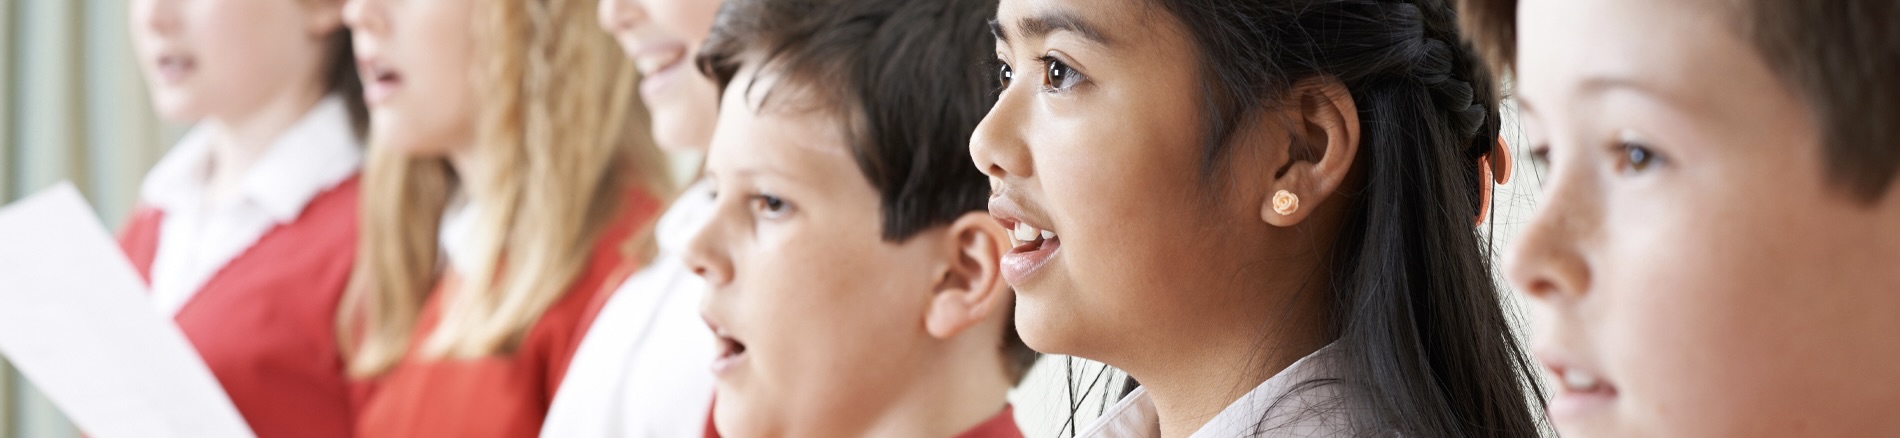 Let's Get Singing: Mentoring for teachers